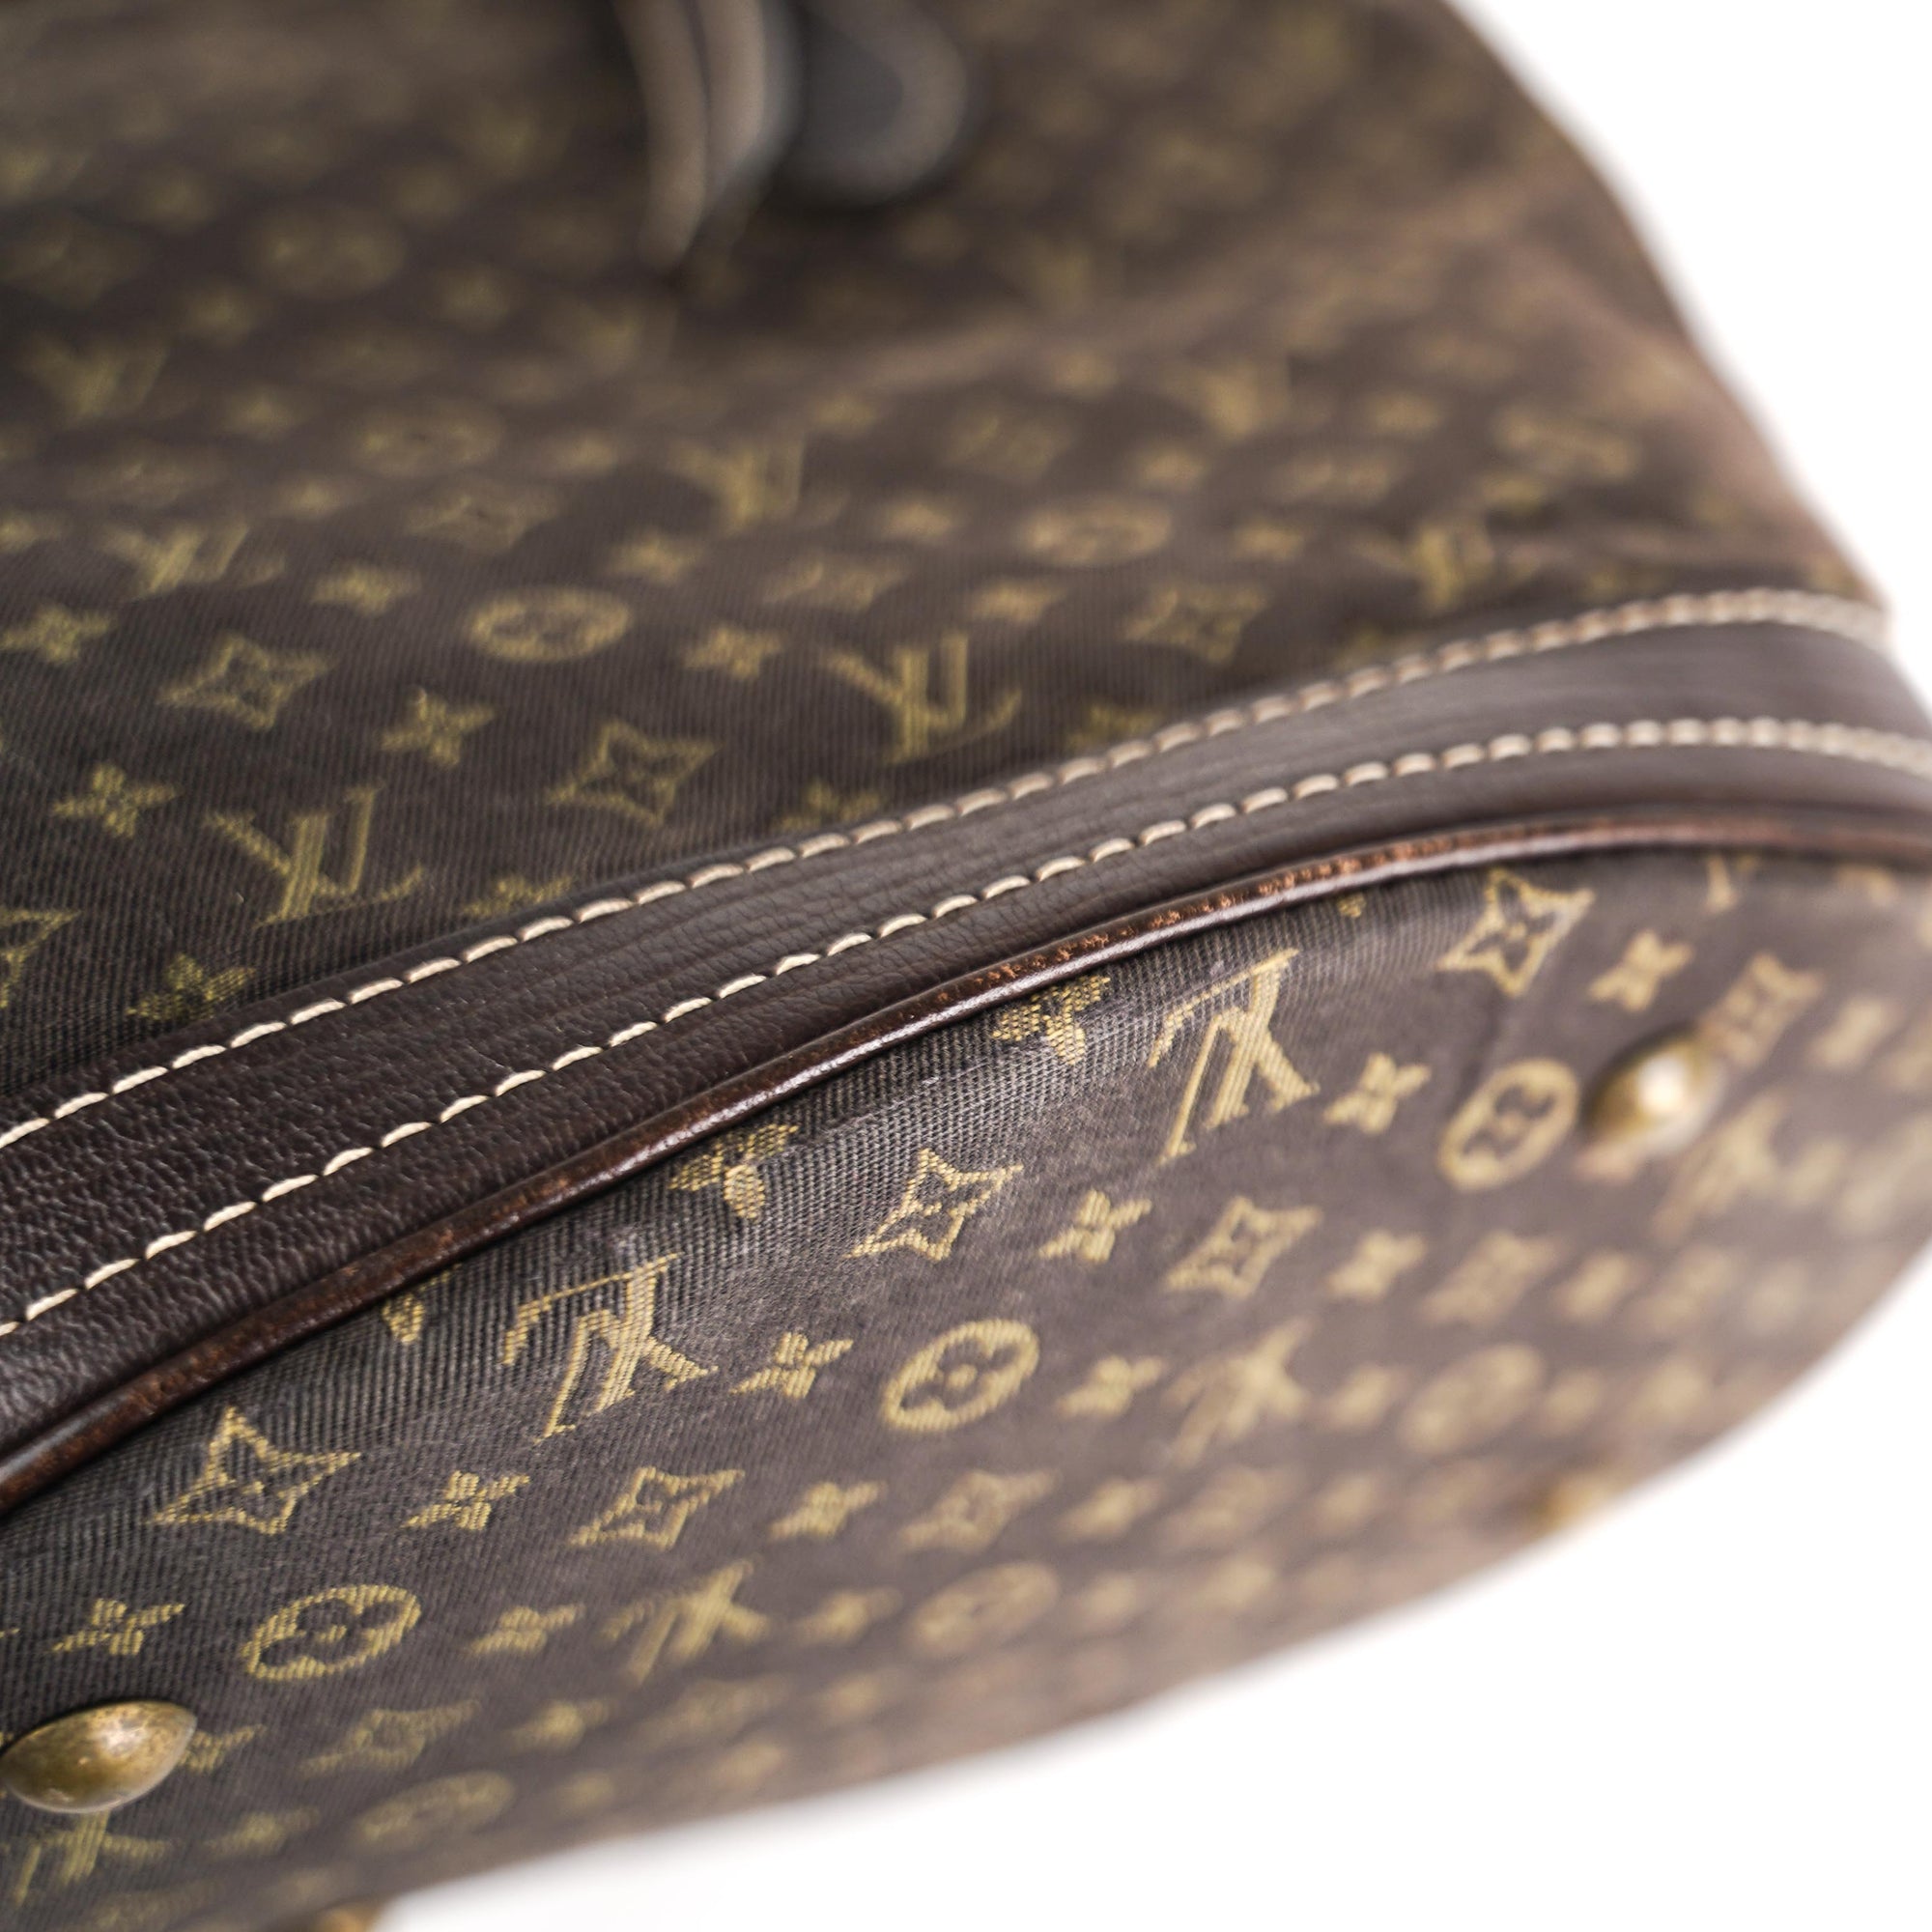 Bucket cloth handbag Louis Vuitton Brown in Cloth - 25097428